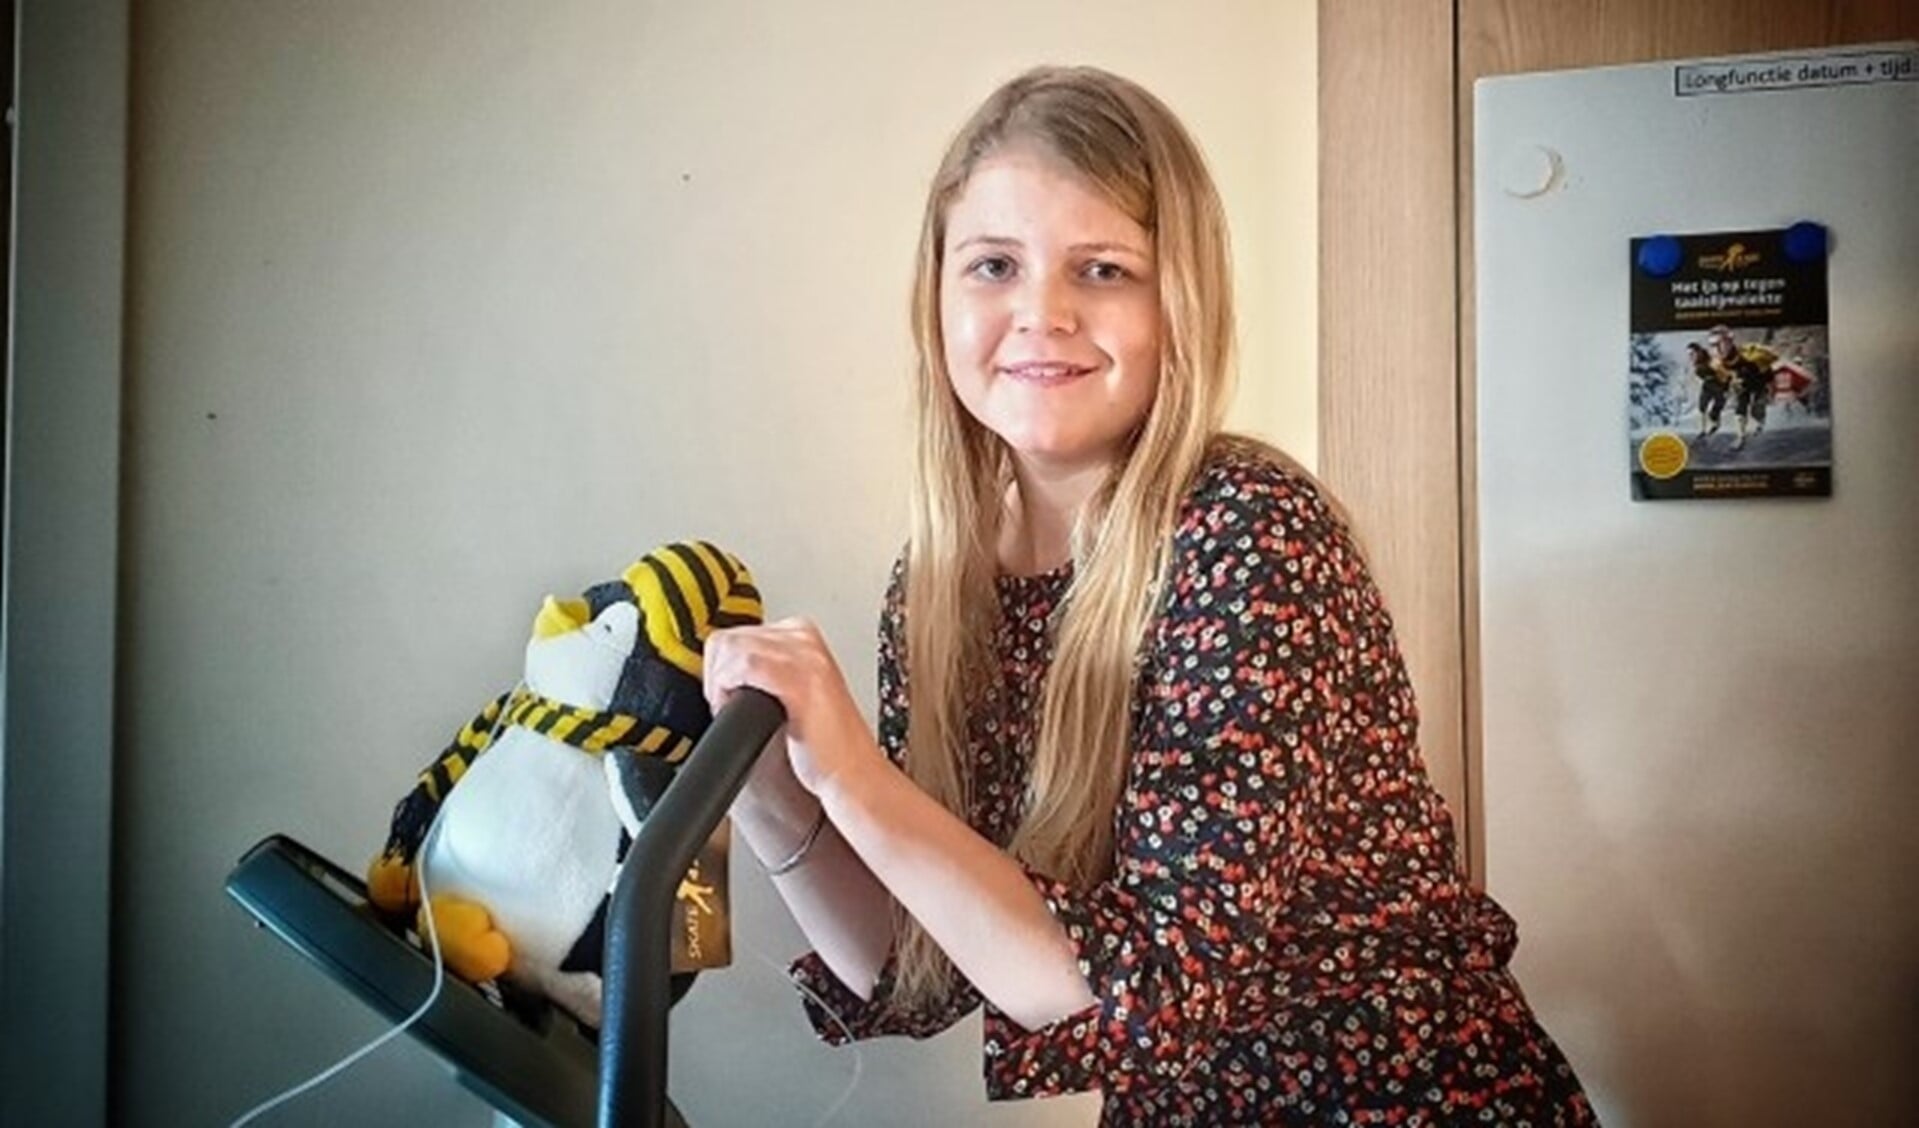 De 25-jarige Jill Oosterbaan traint hard om zich voor te bereiden op de Skate4Air Daylight Challenge in Zweden. Op de ijsbaan, maar ook op de hometrainer. Mascotte Skaty traint steevast met haar mee.